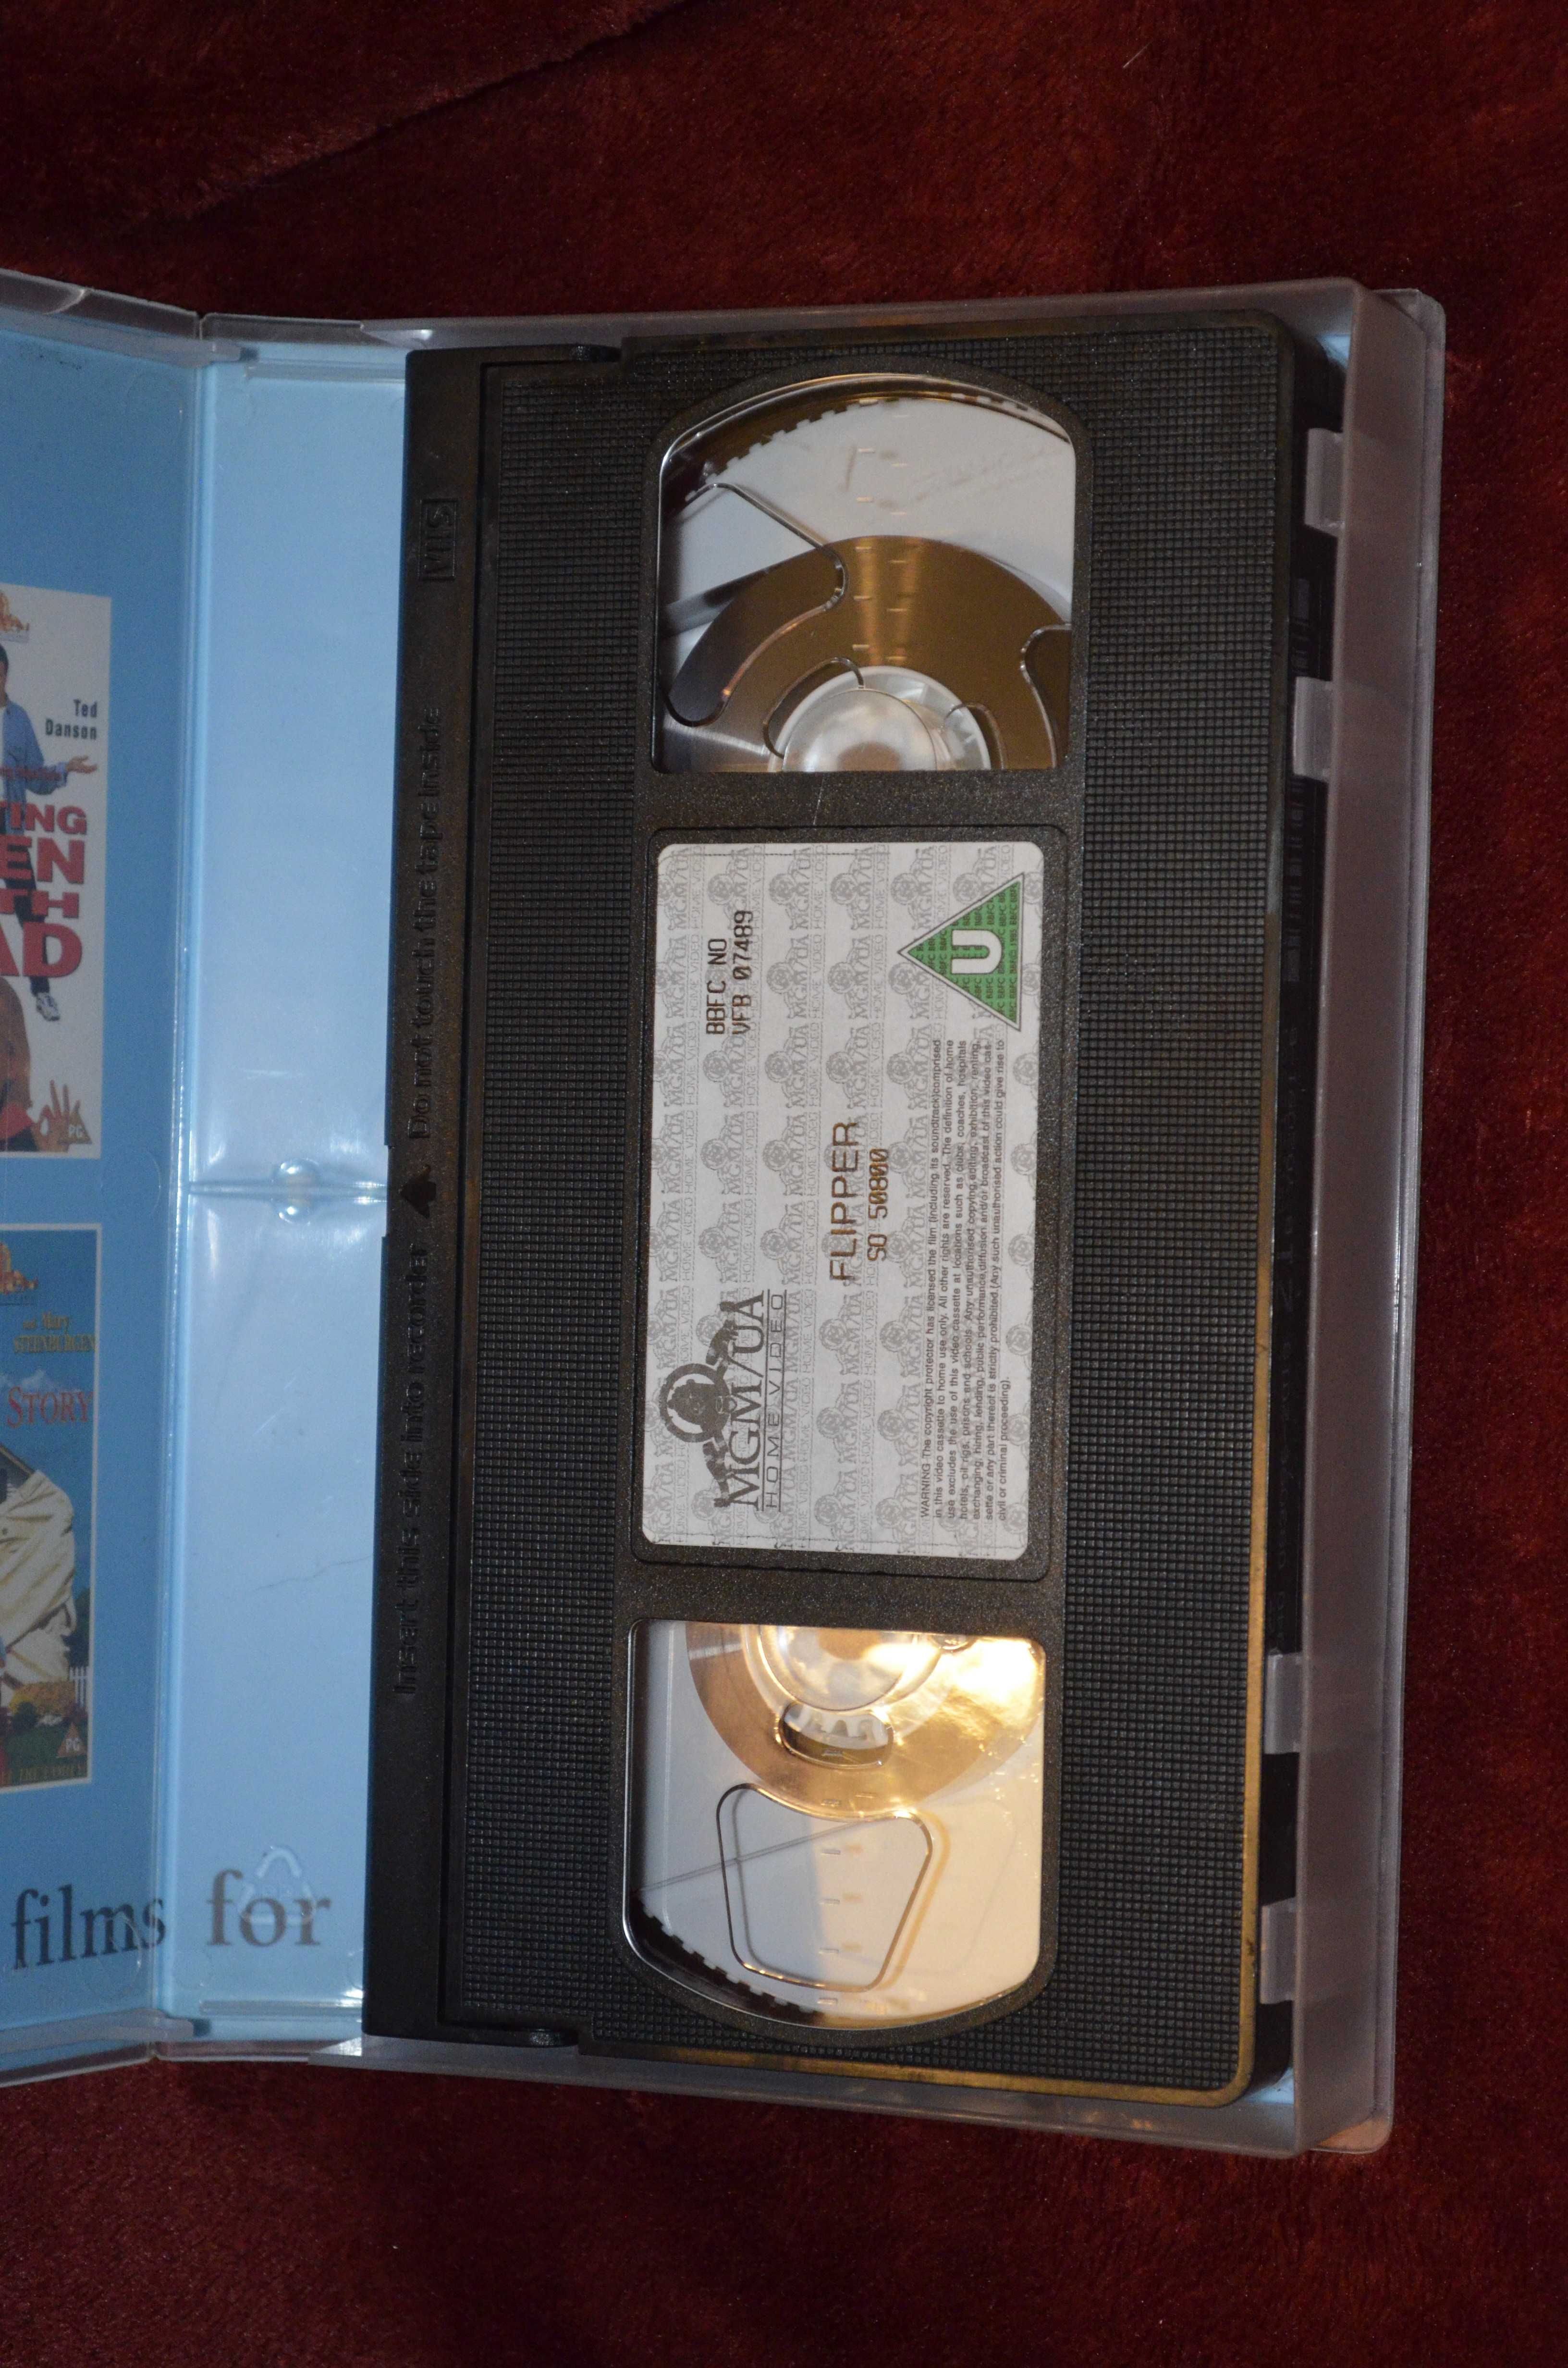 Flippper 1996 film VHS